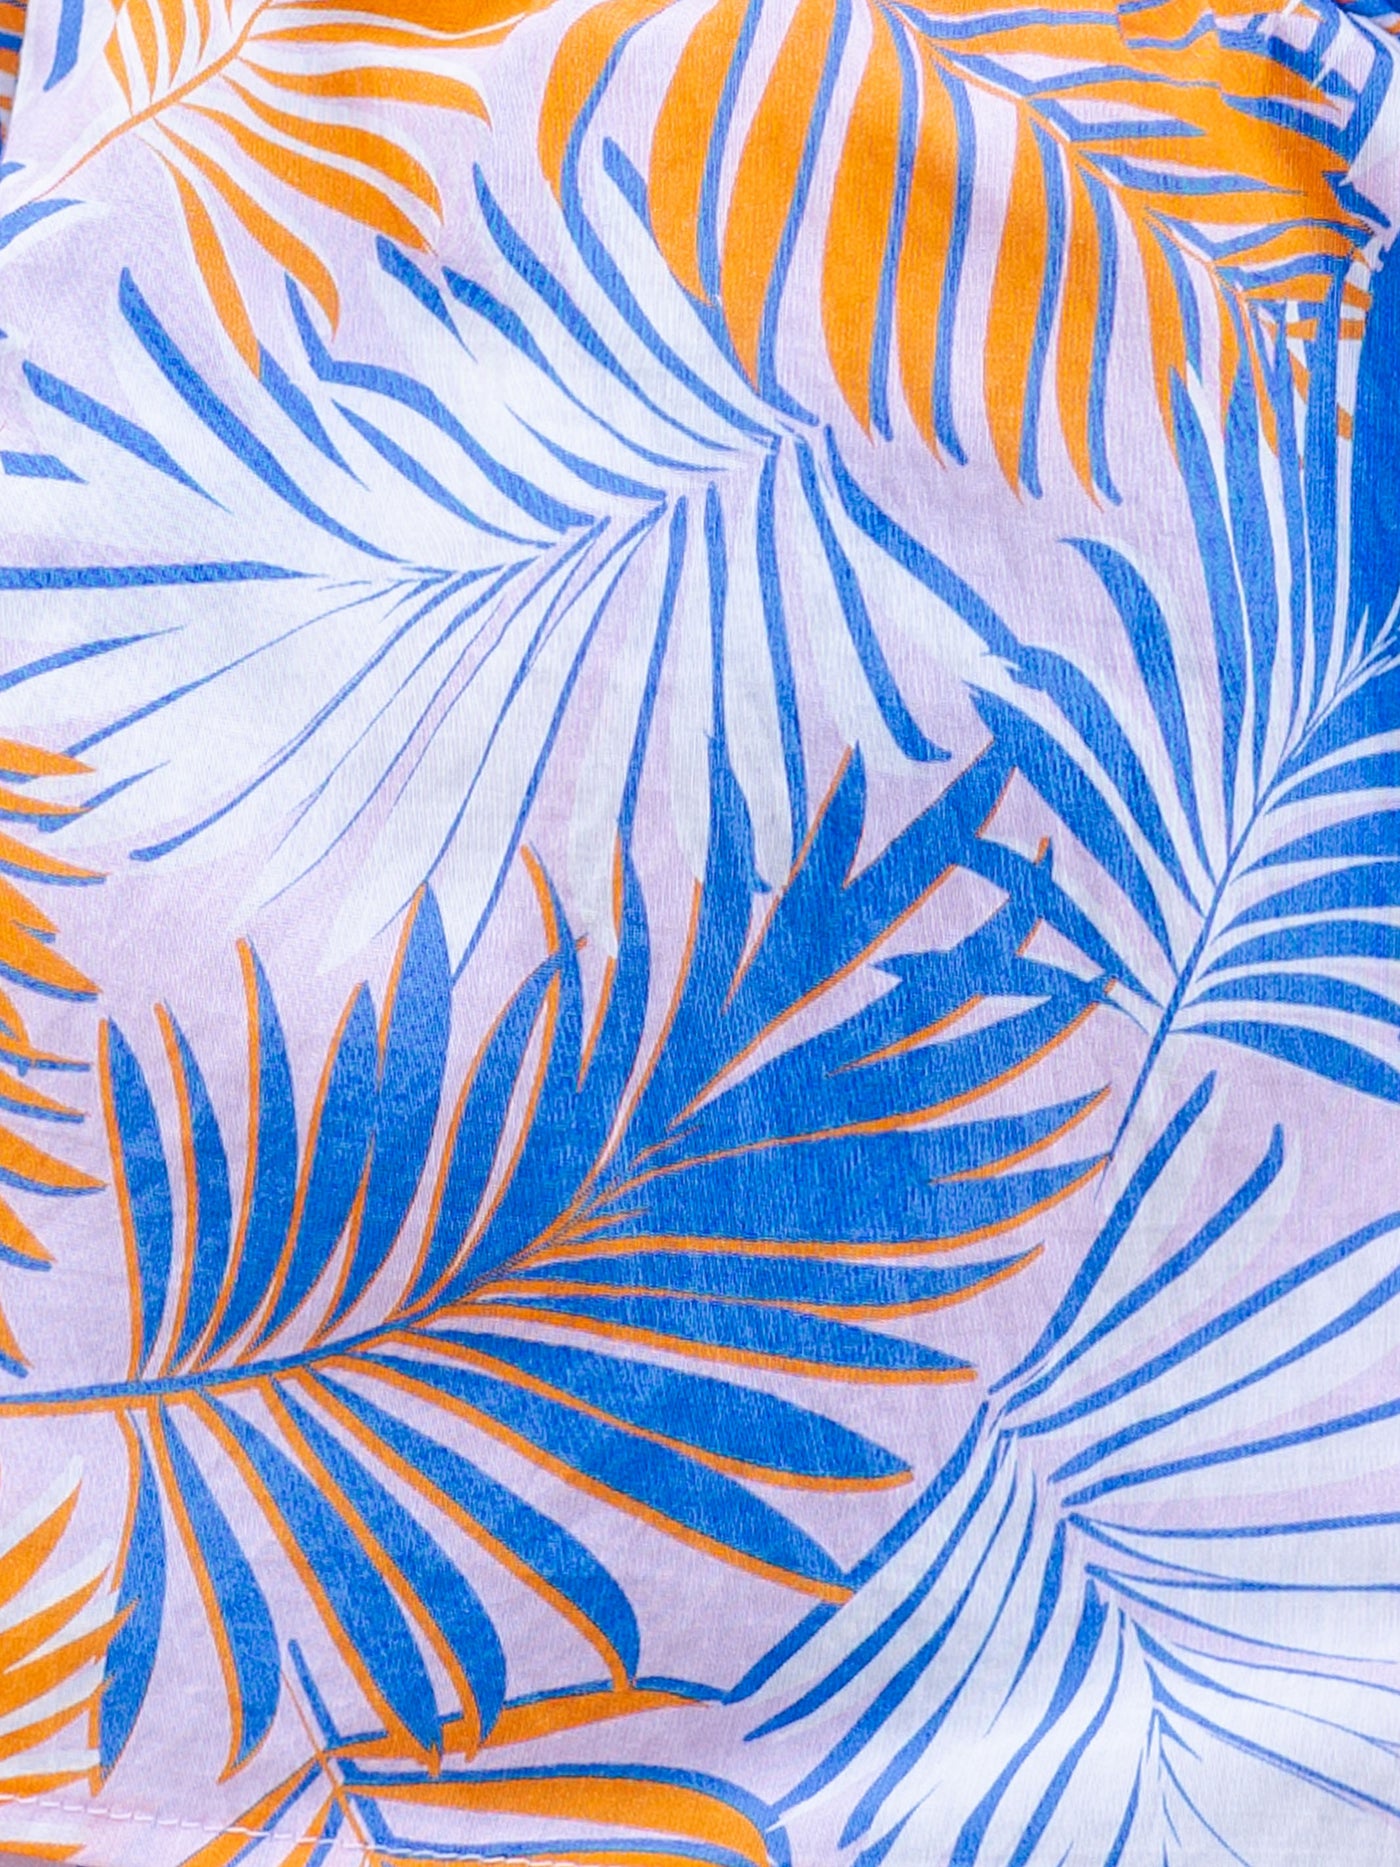 Sadie Skirt | Tropical Leaves Blue